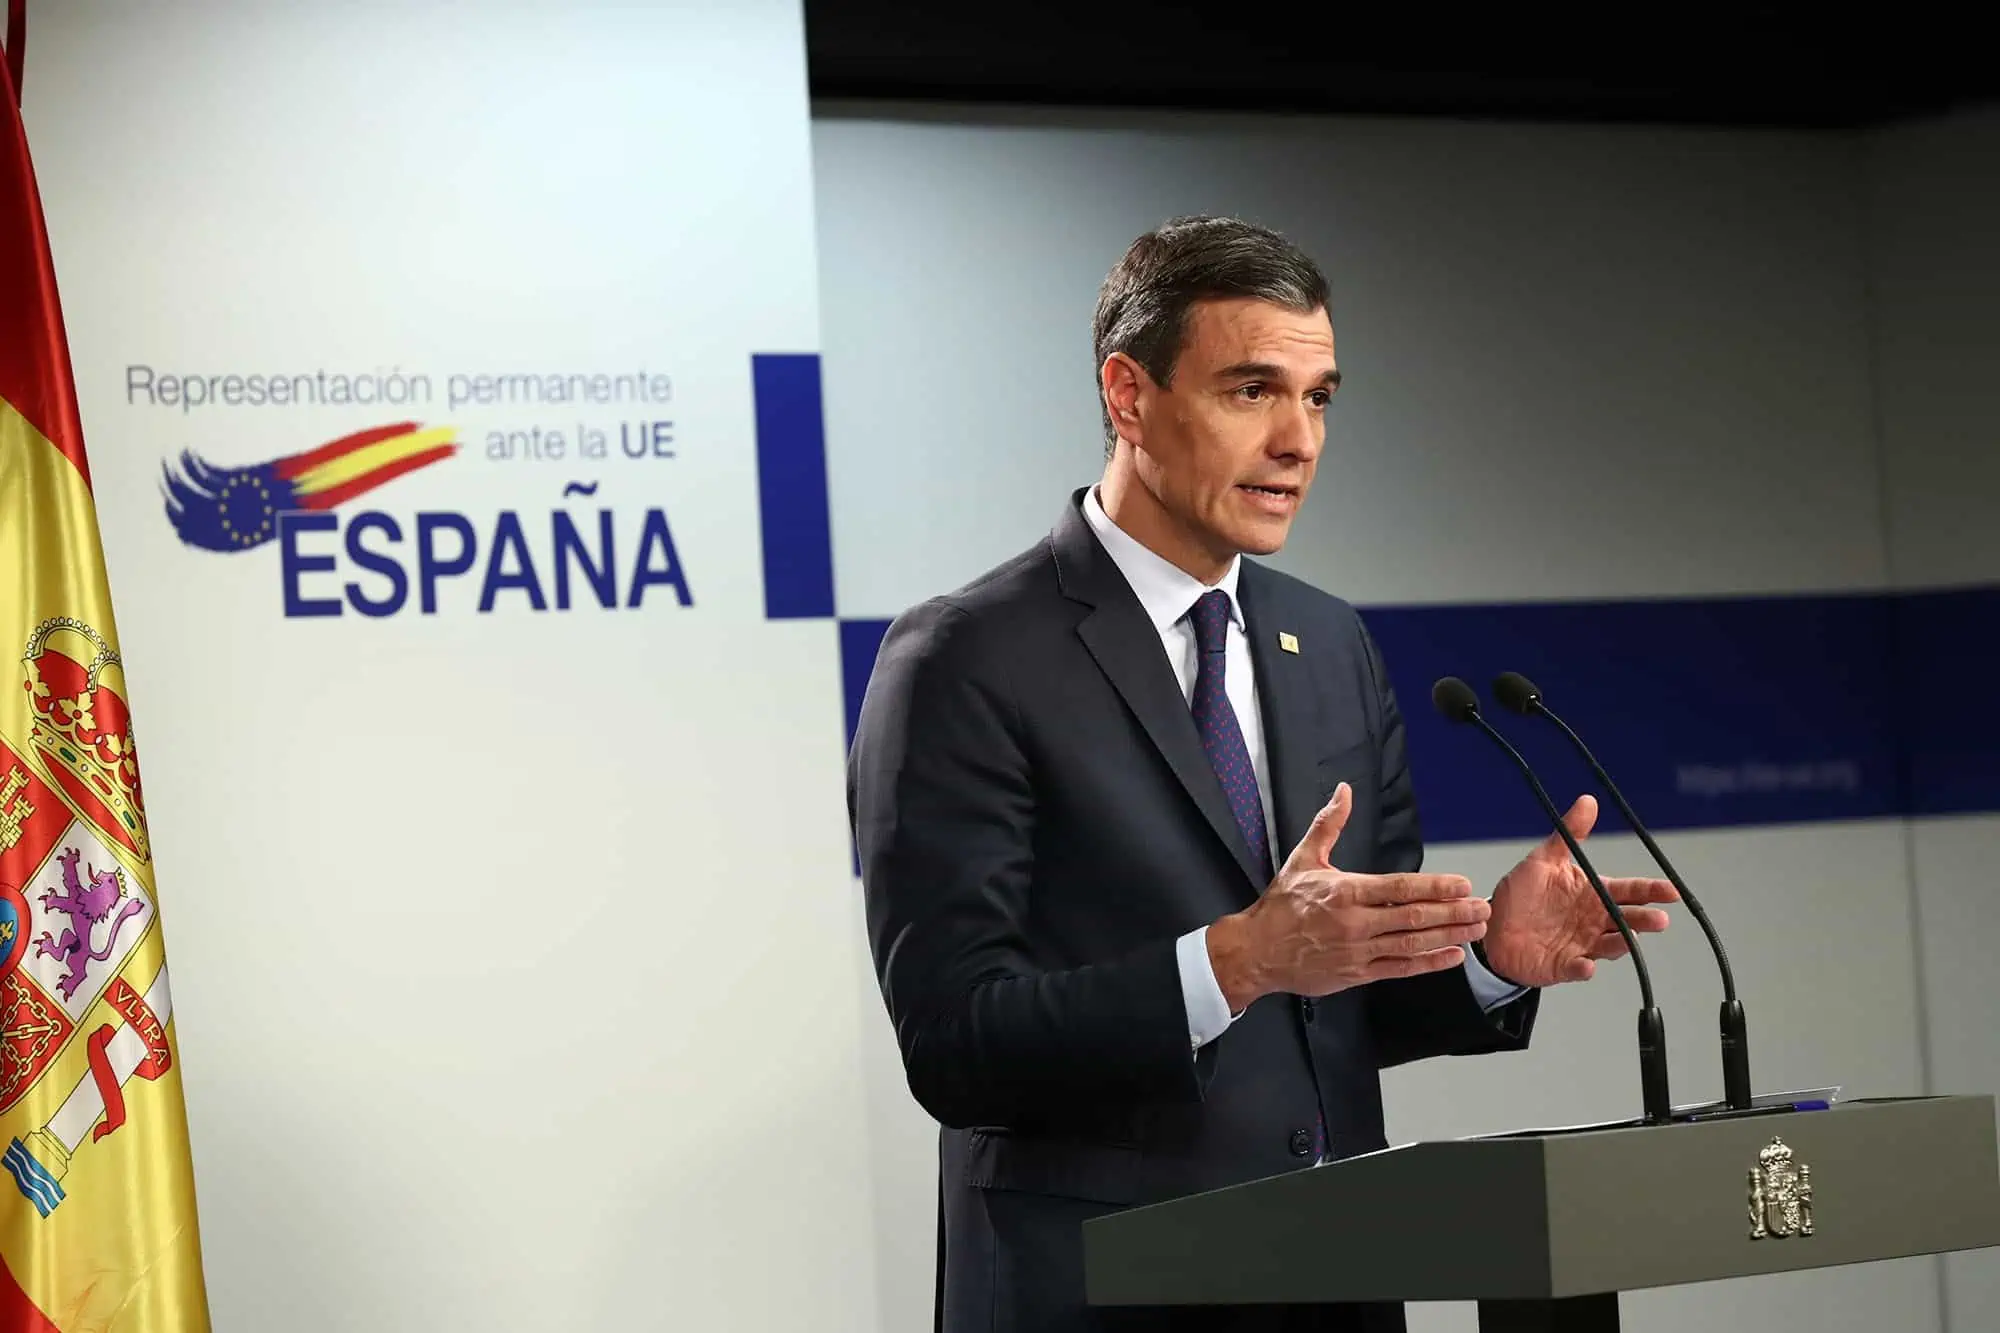 Il 28 maggio c'è l'antipasto delle elezioni generali in Spagna